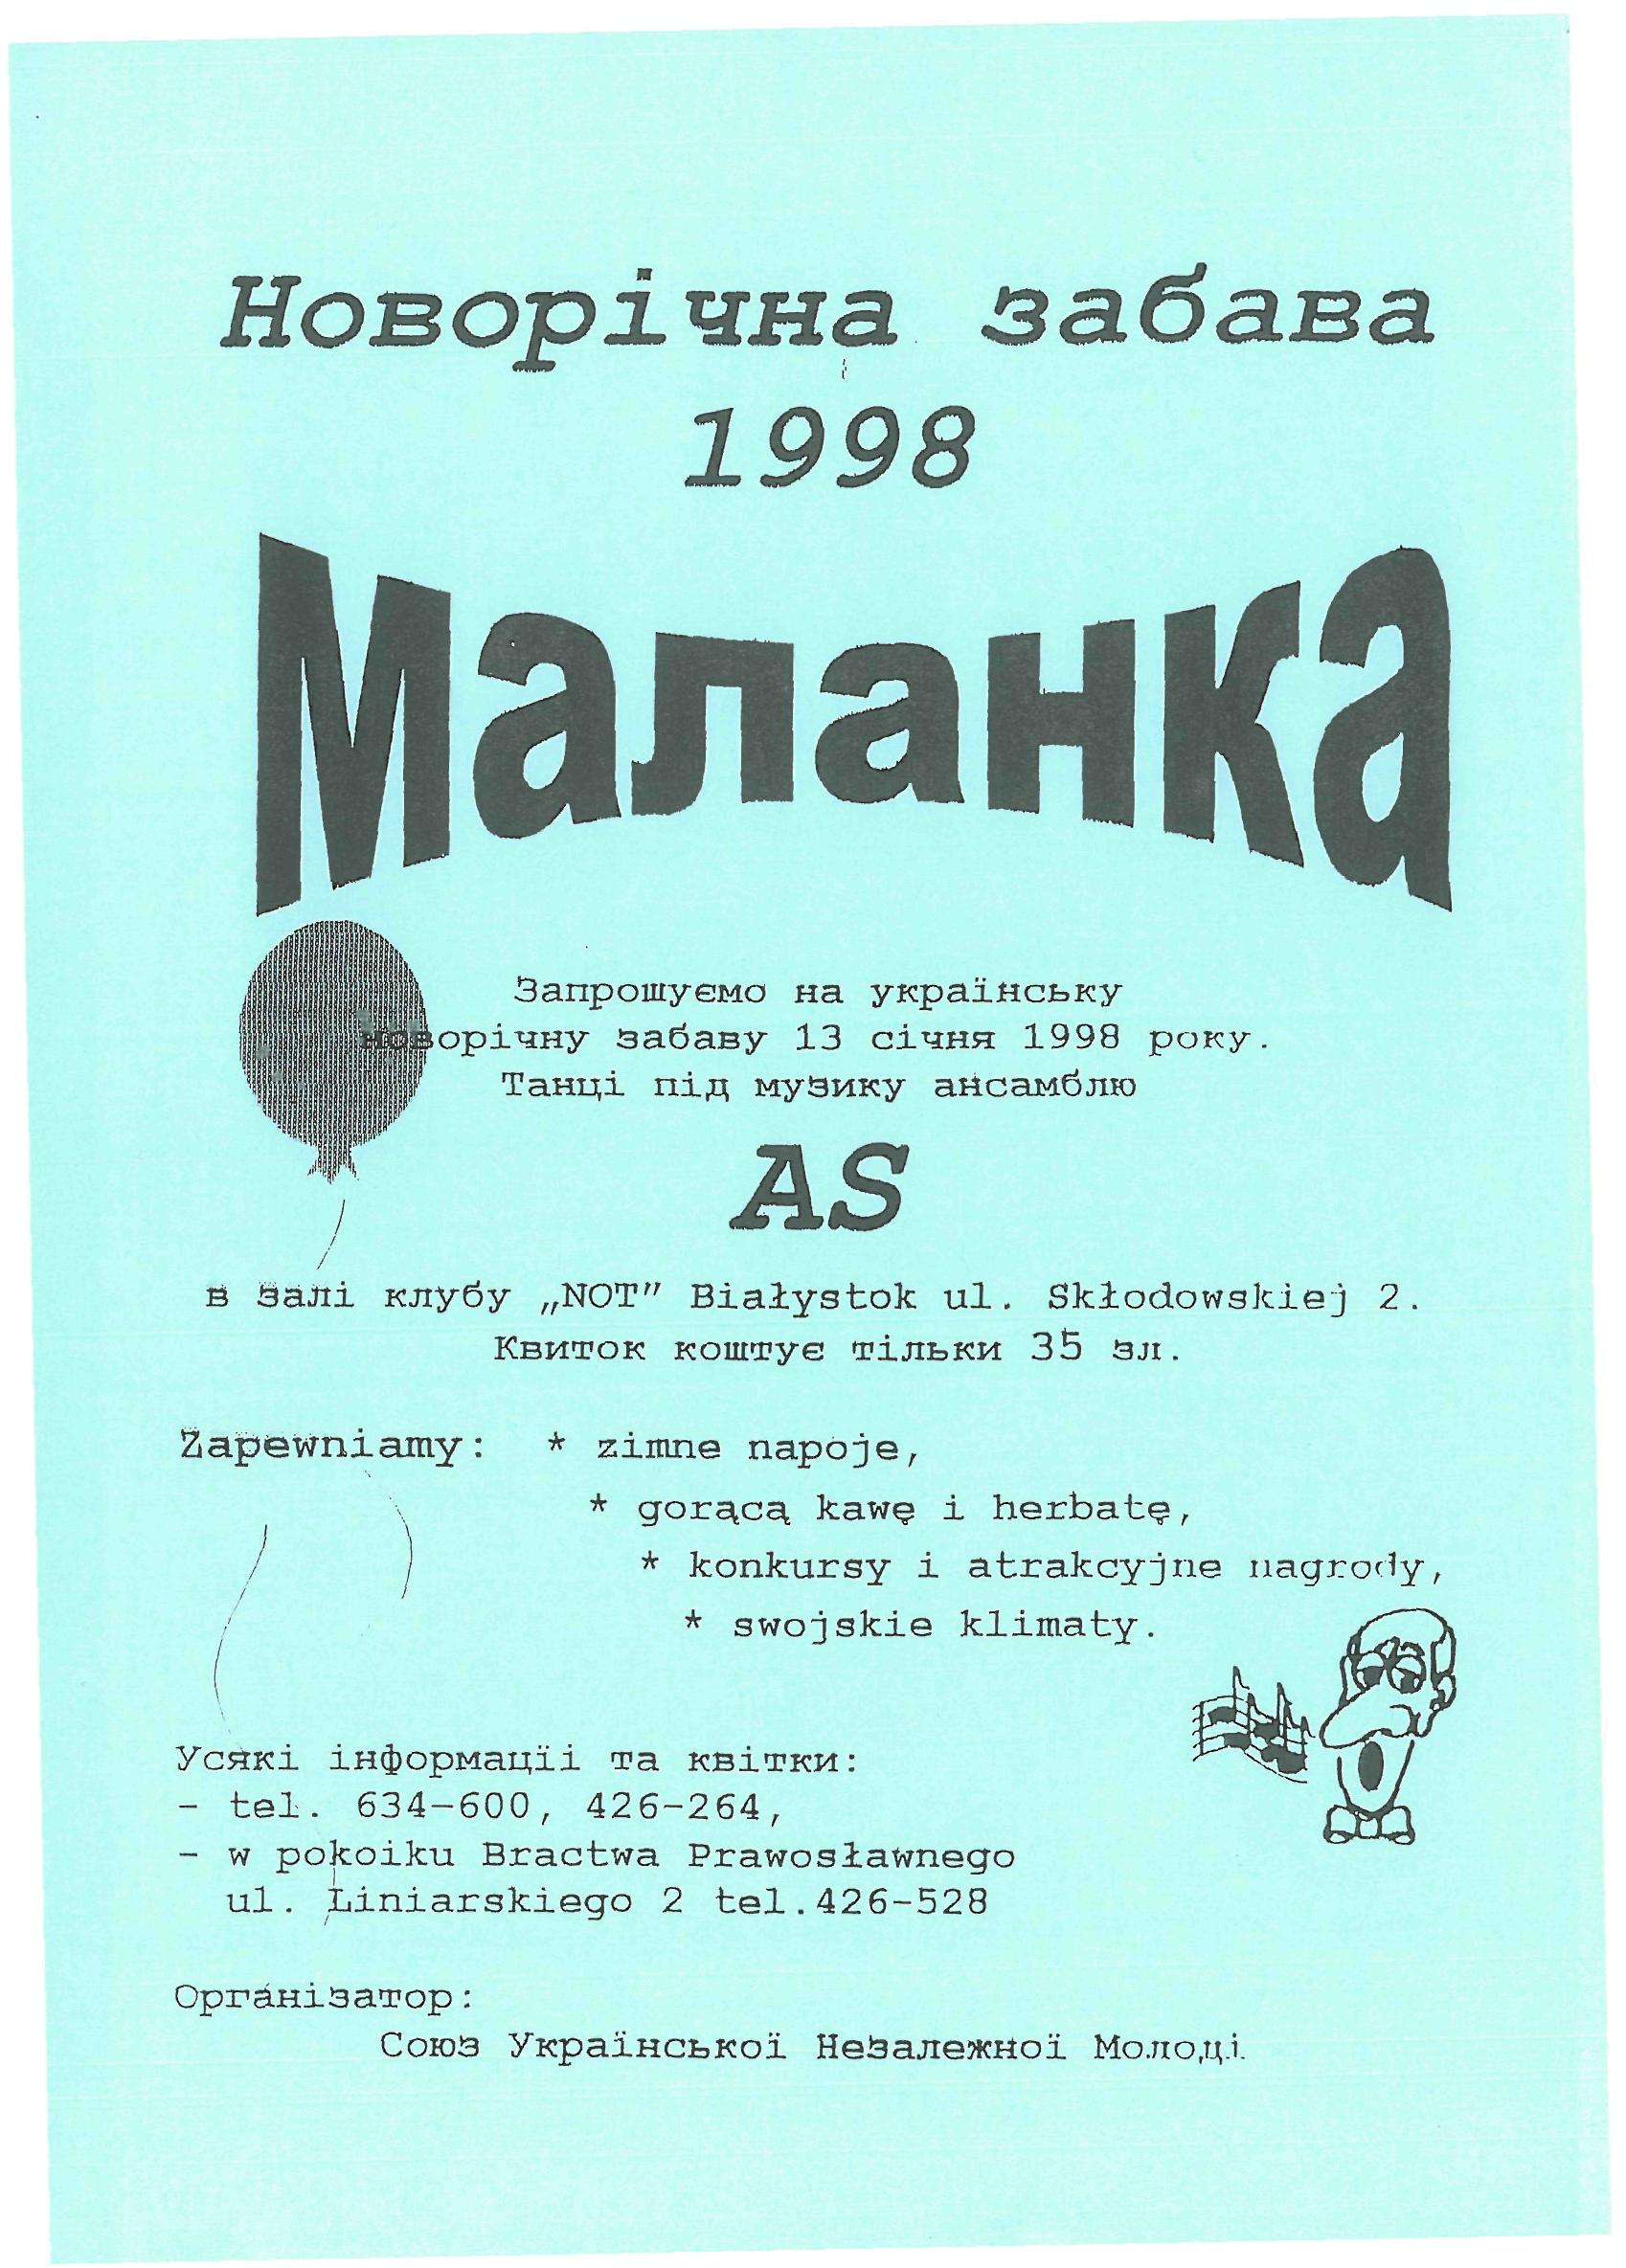 Plakaty z Małanek – zabaw noworocznych organizowanych w Białymstoku 1995-2001 r.